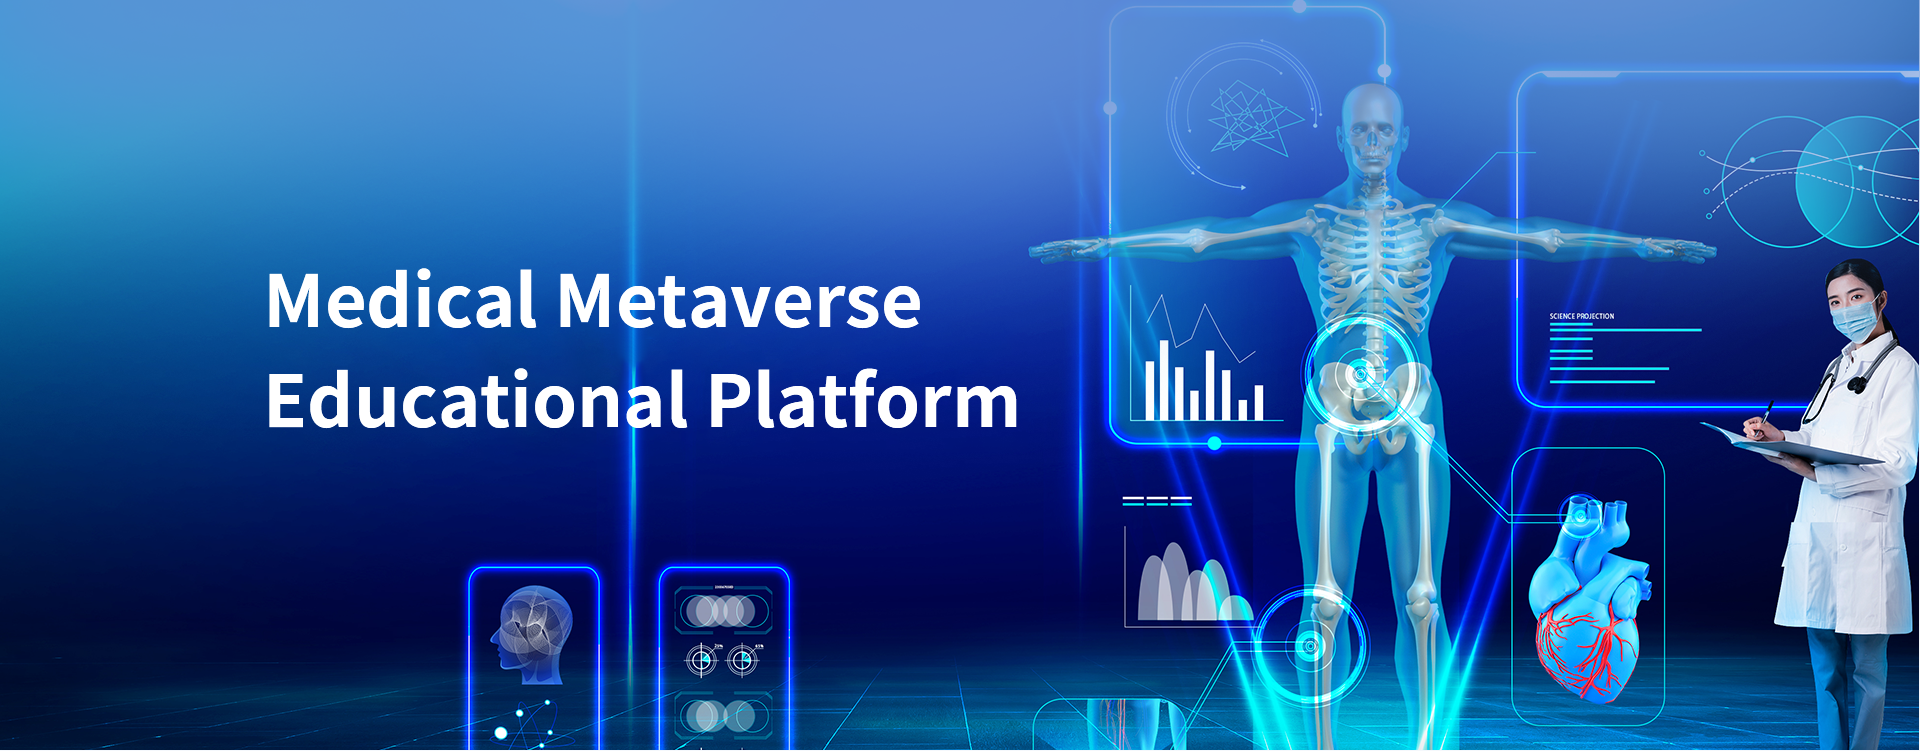 Medical Metaverse Educational Platform